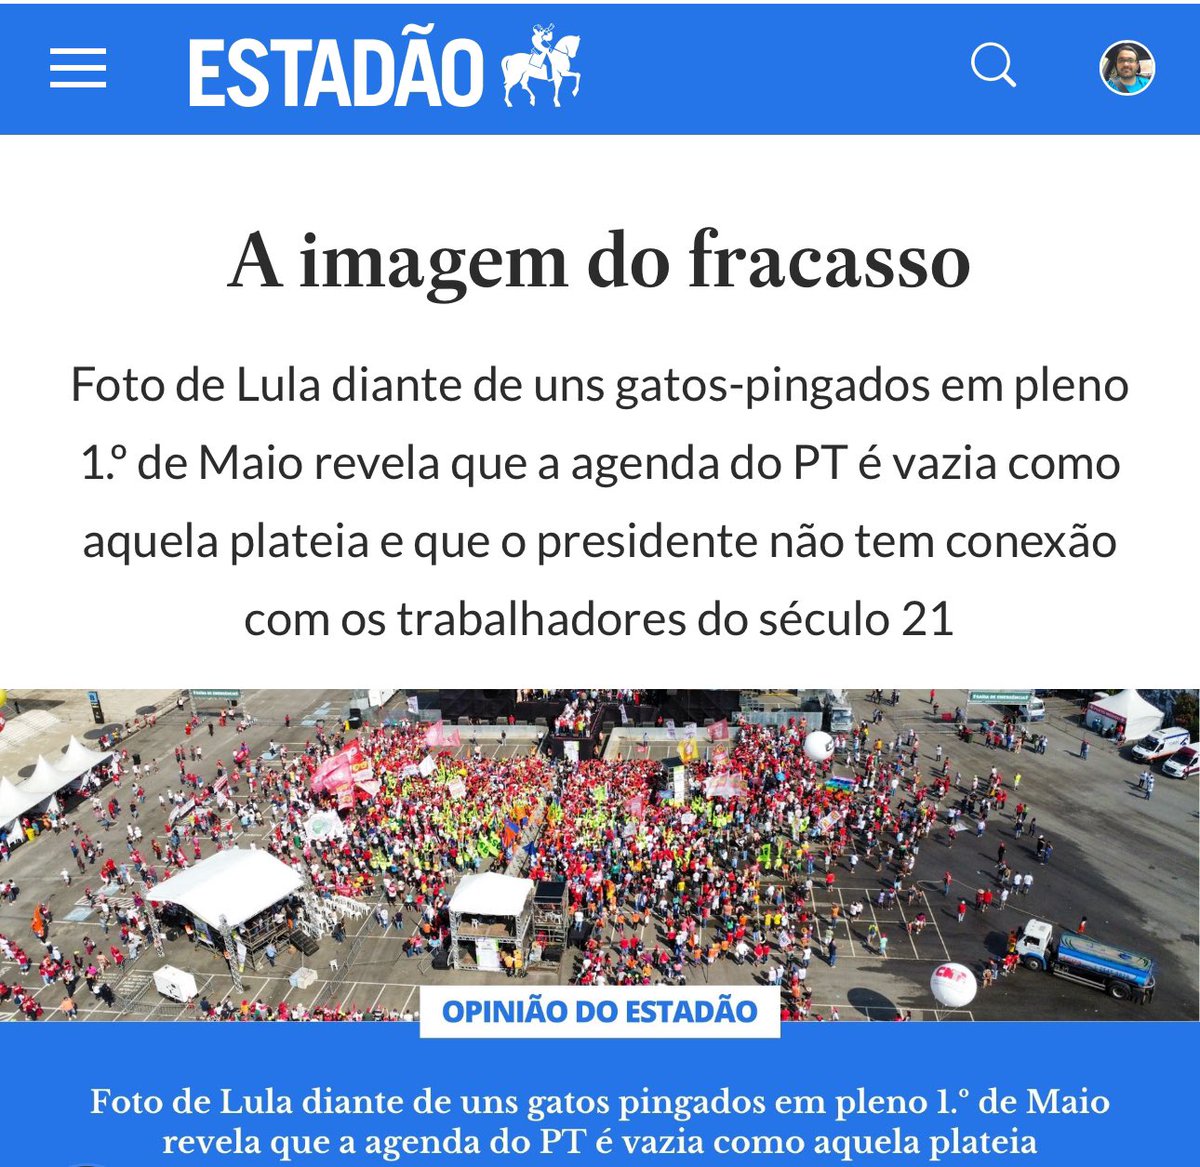 Trecho do Editorial do Estadão que fez o L com gosto: “o ato não poderia ser diferente do fiasco que foi por uma razão fundamental: o Brasil é governado por um presidente que não viu o tempo passar.”